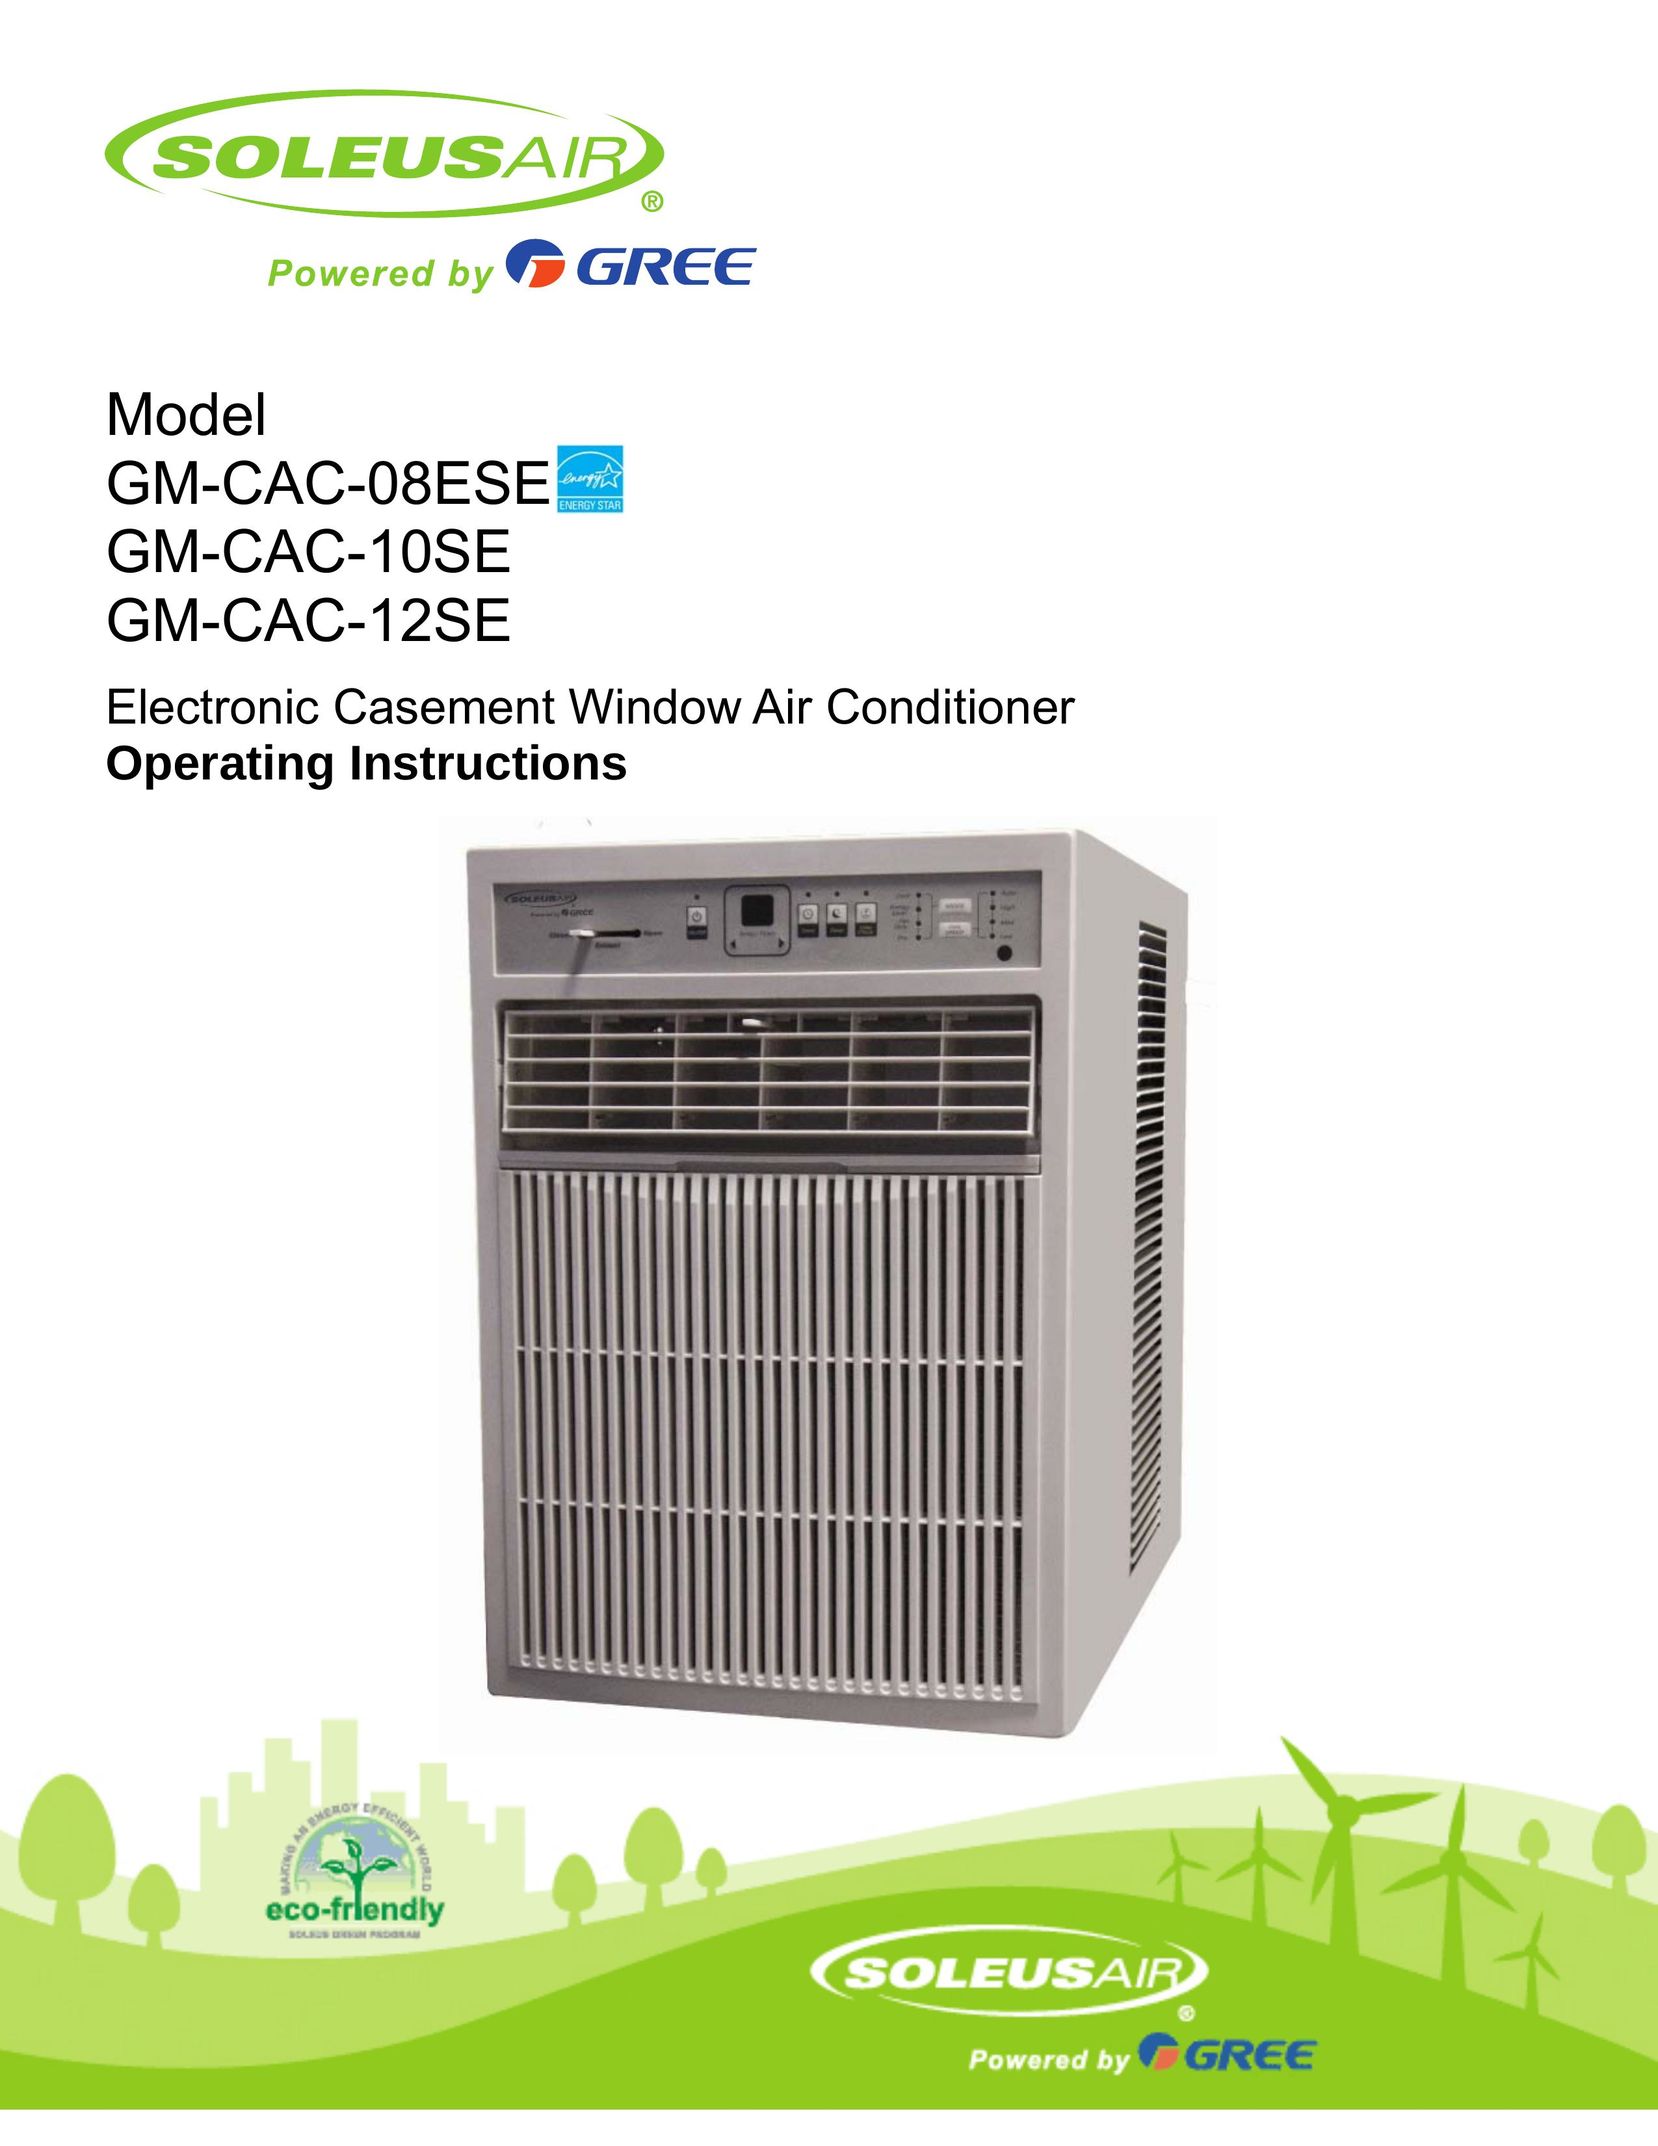 Soleus Air GM-CAC-10SE Air Conditioner User Manual